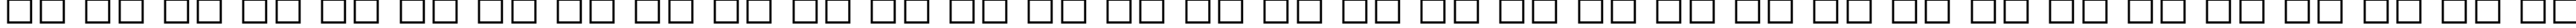 Пример написания русского алфавита шрифтом Math-PS